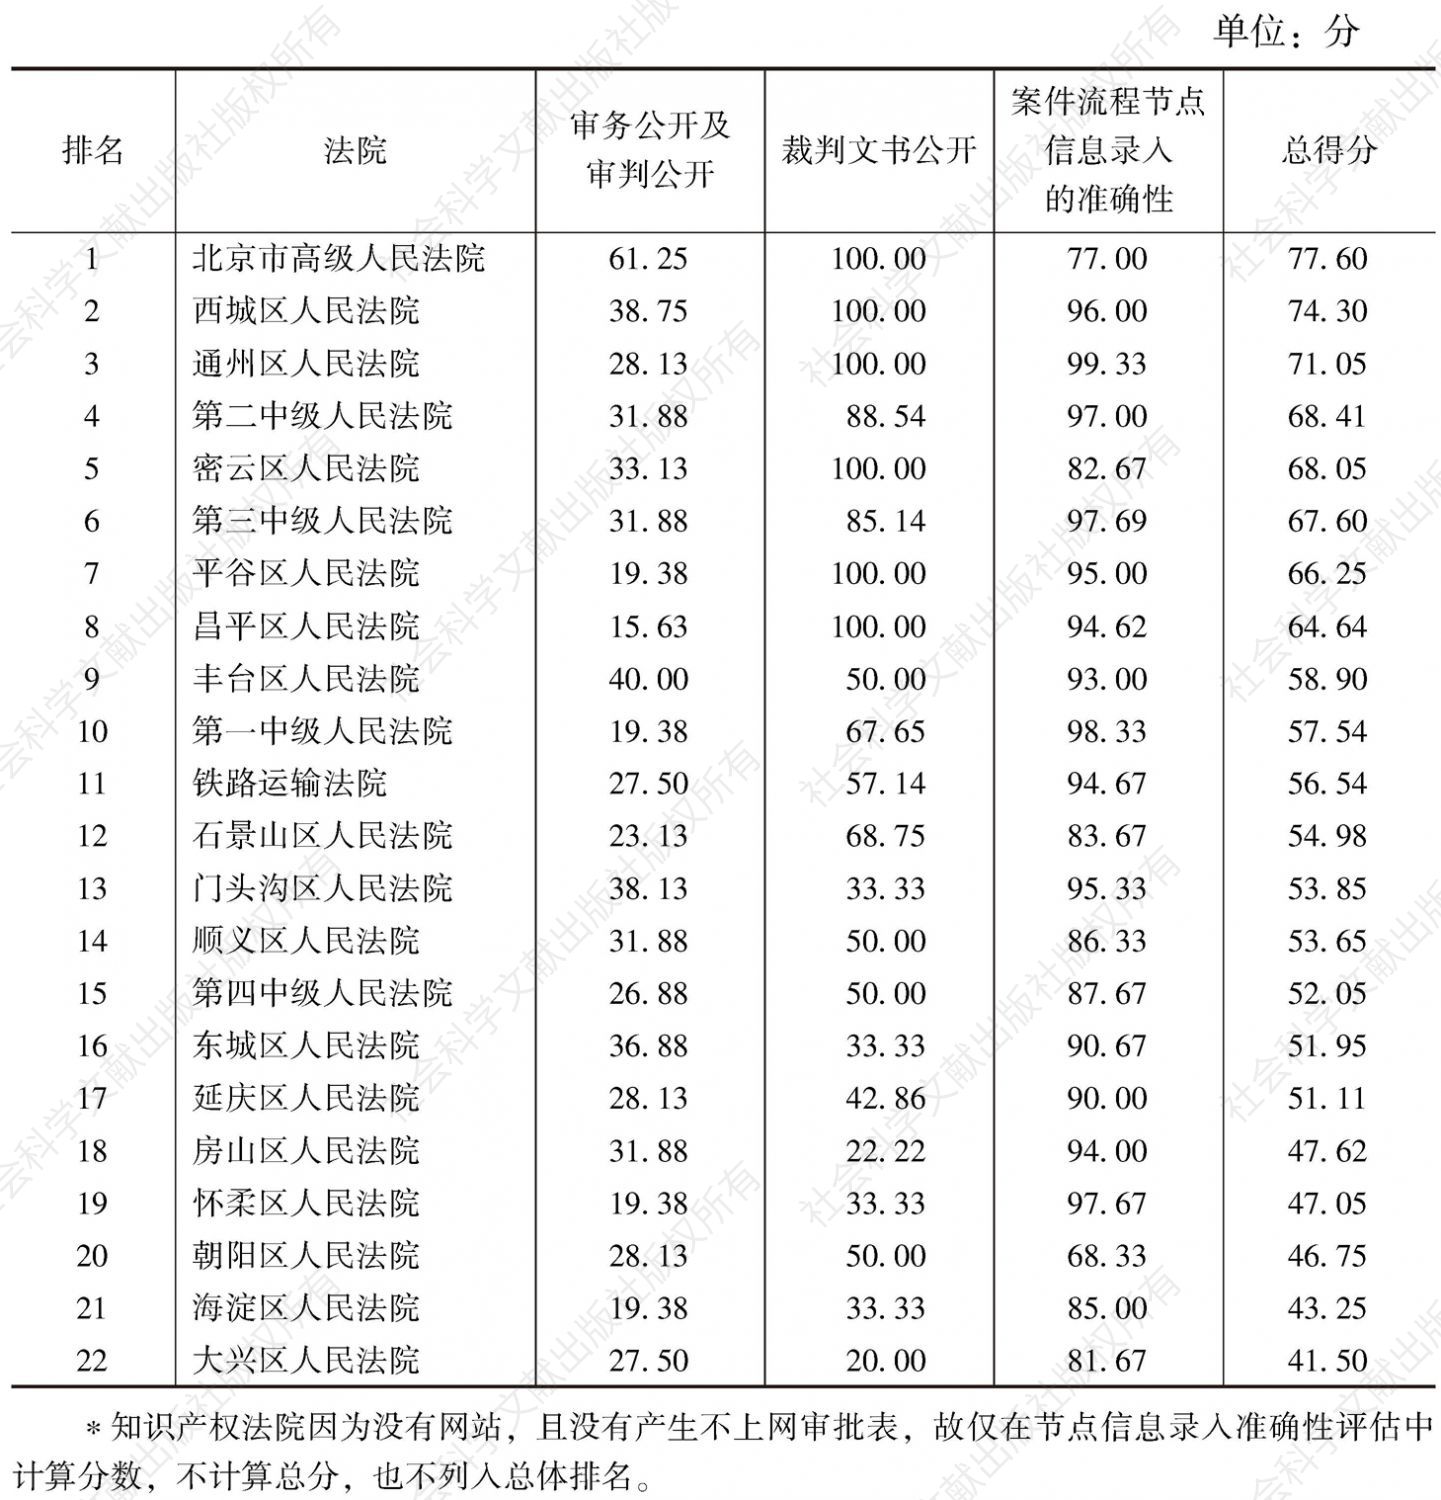 表2 北京市22家法院阳光司法指数评估结果*（满分100分）